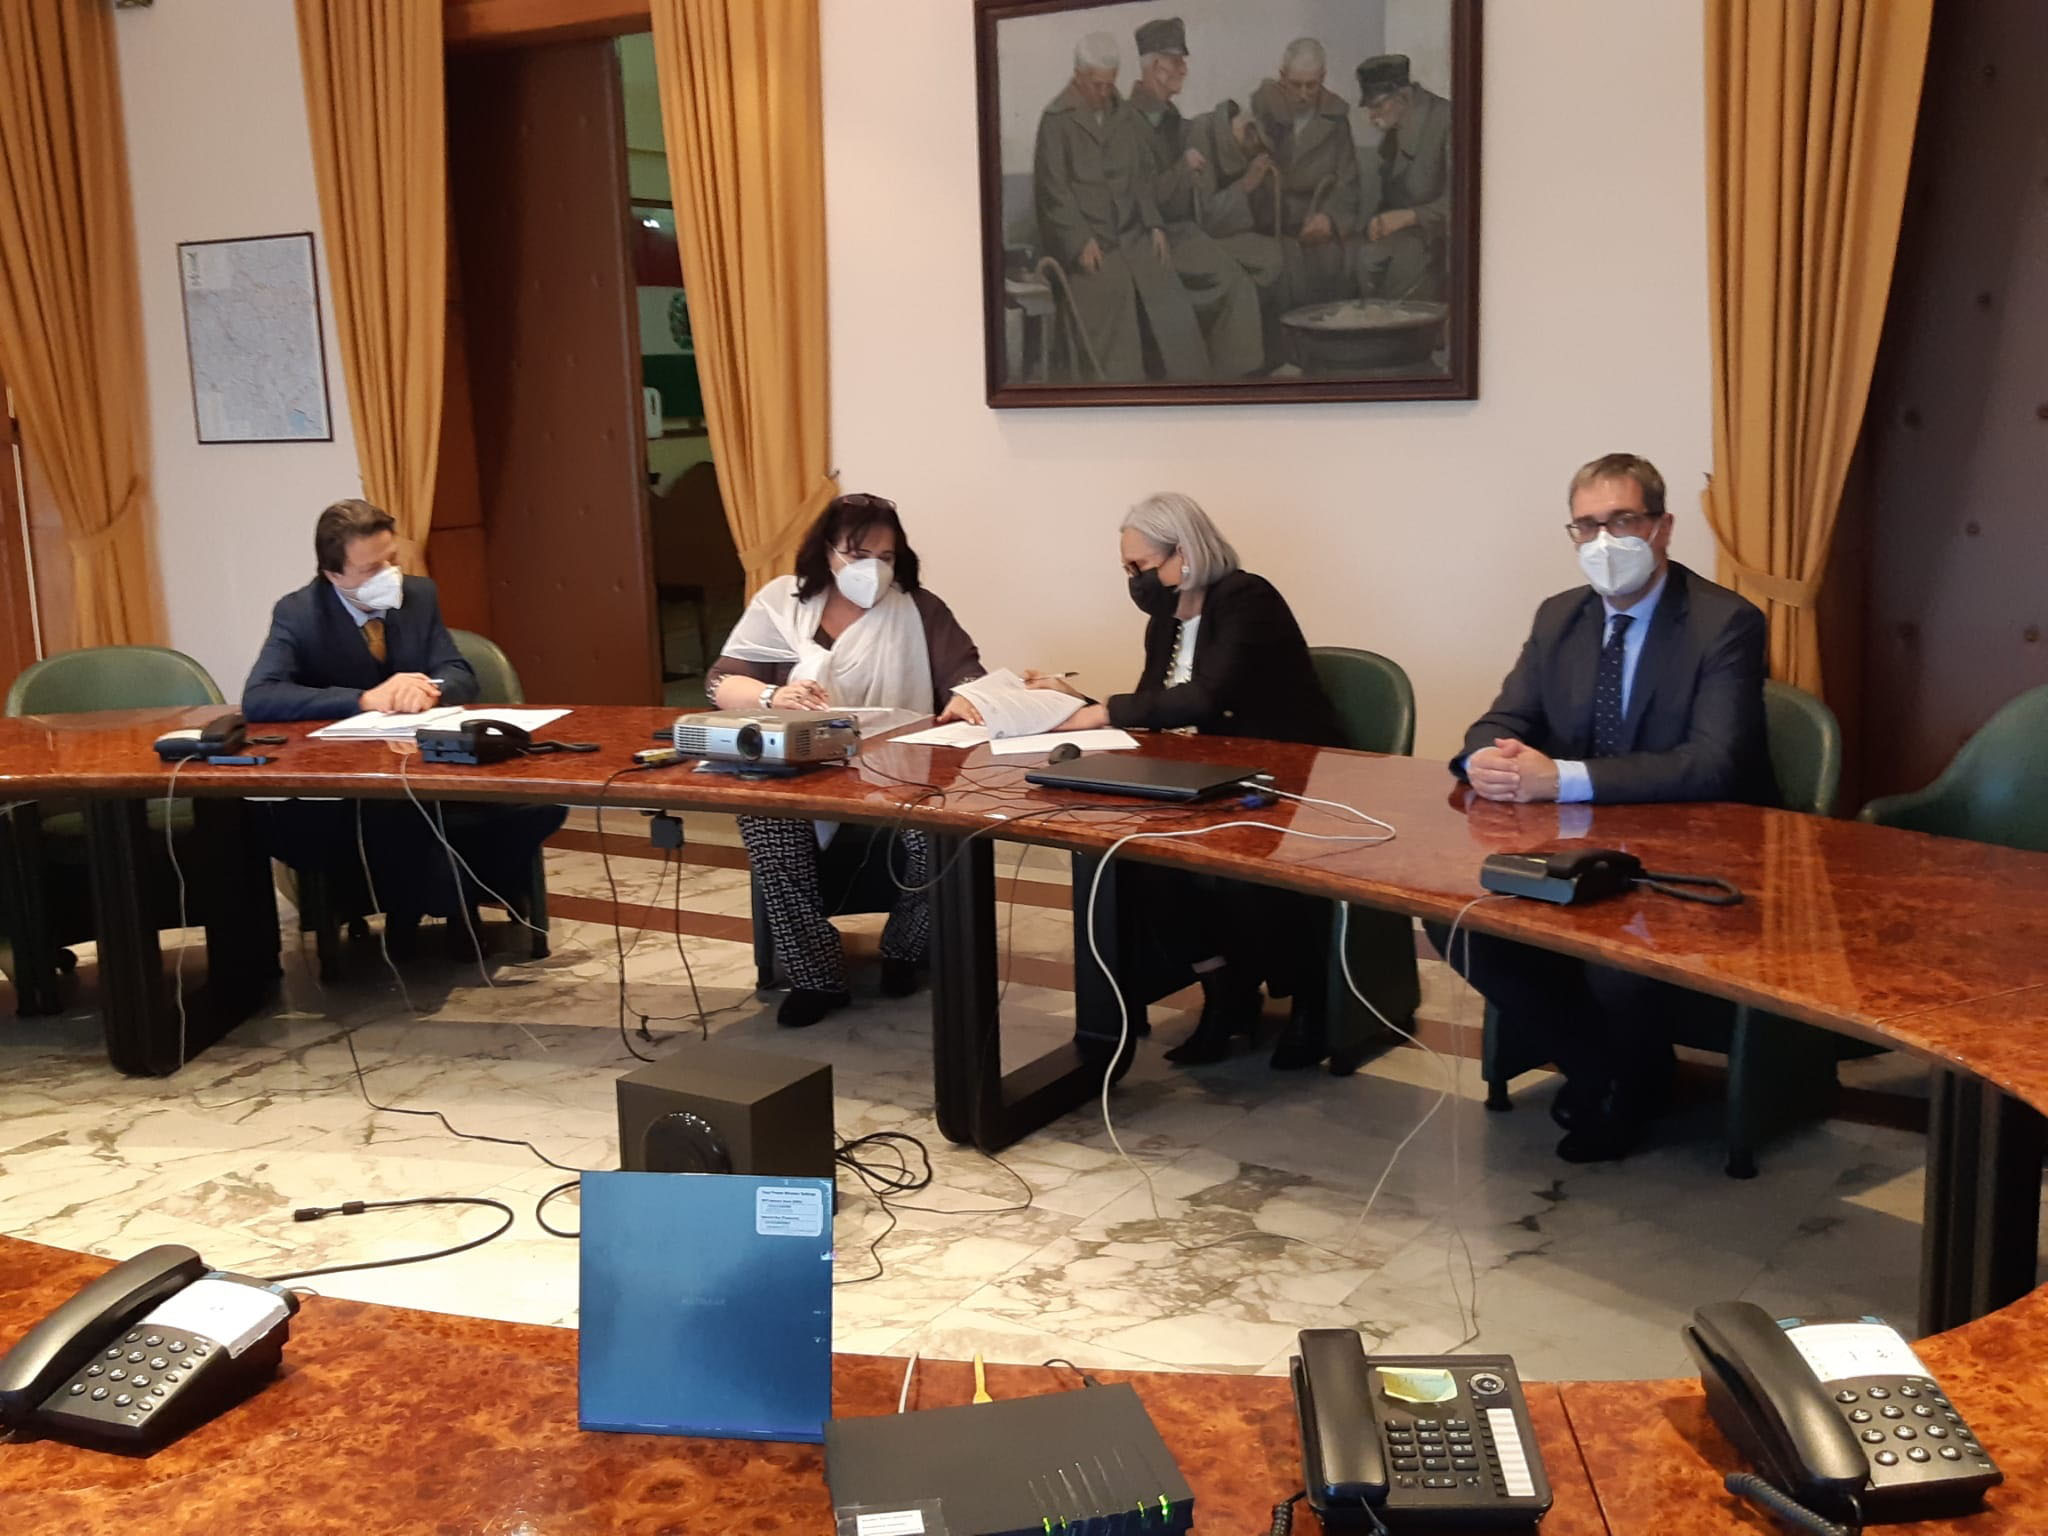 Firmato questo pomeriggio, al Palazzo del Governo, il Protocollo d’intesa tra Prefettura e Camera di Commercio per la tutela della legalità sulle attività d’impresa della provincia di Arezzo